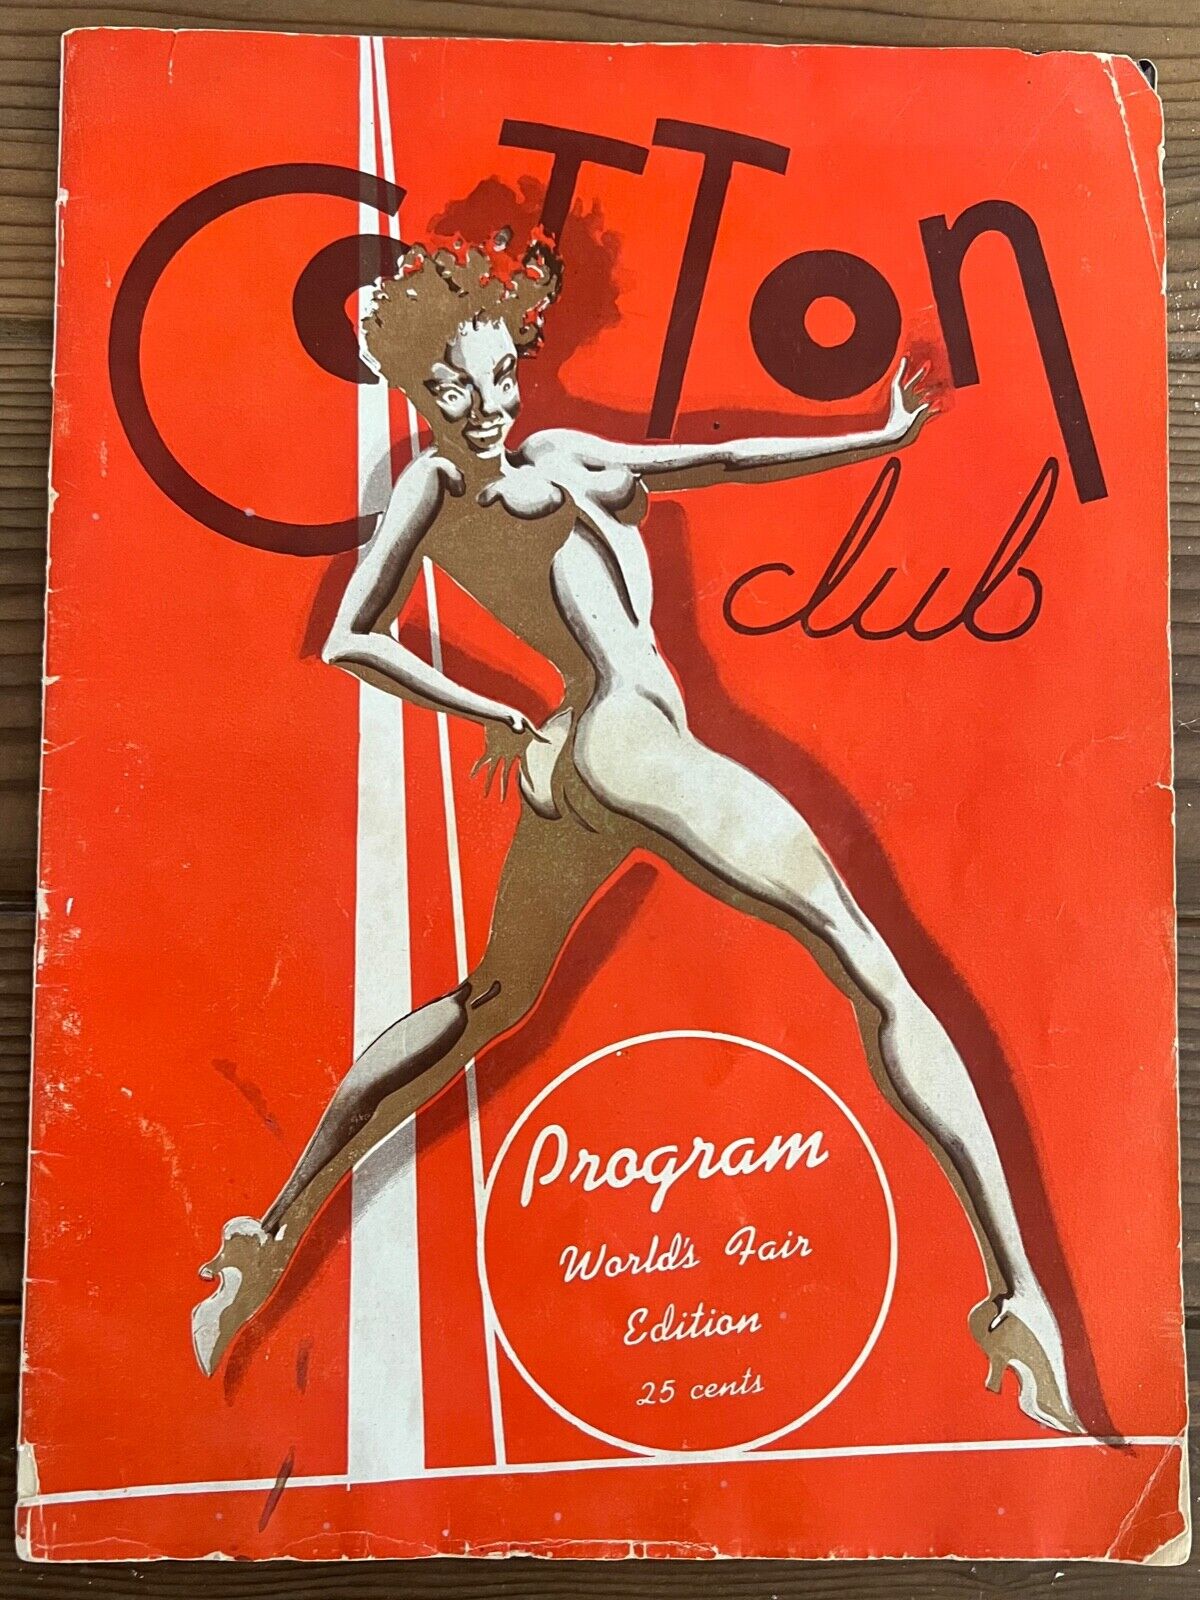 Original 1940's Cotton Club Worlds Fair Program, very rare. Cab Calloway